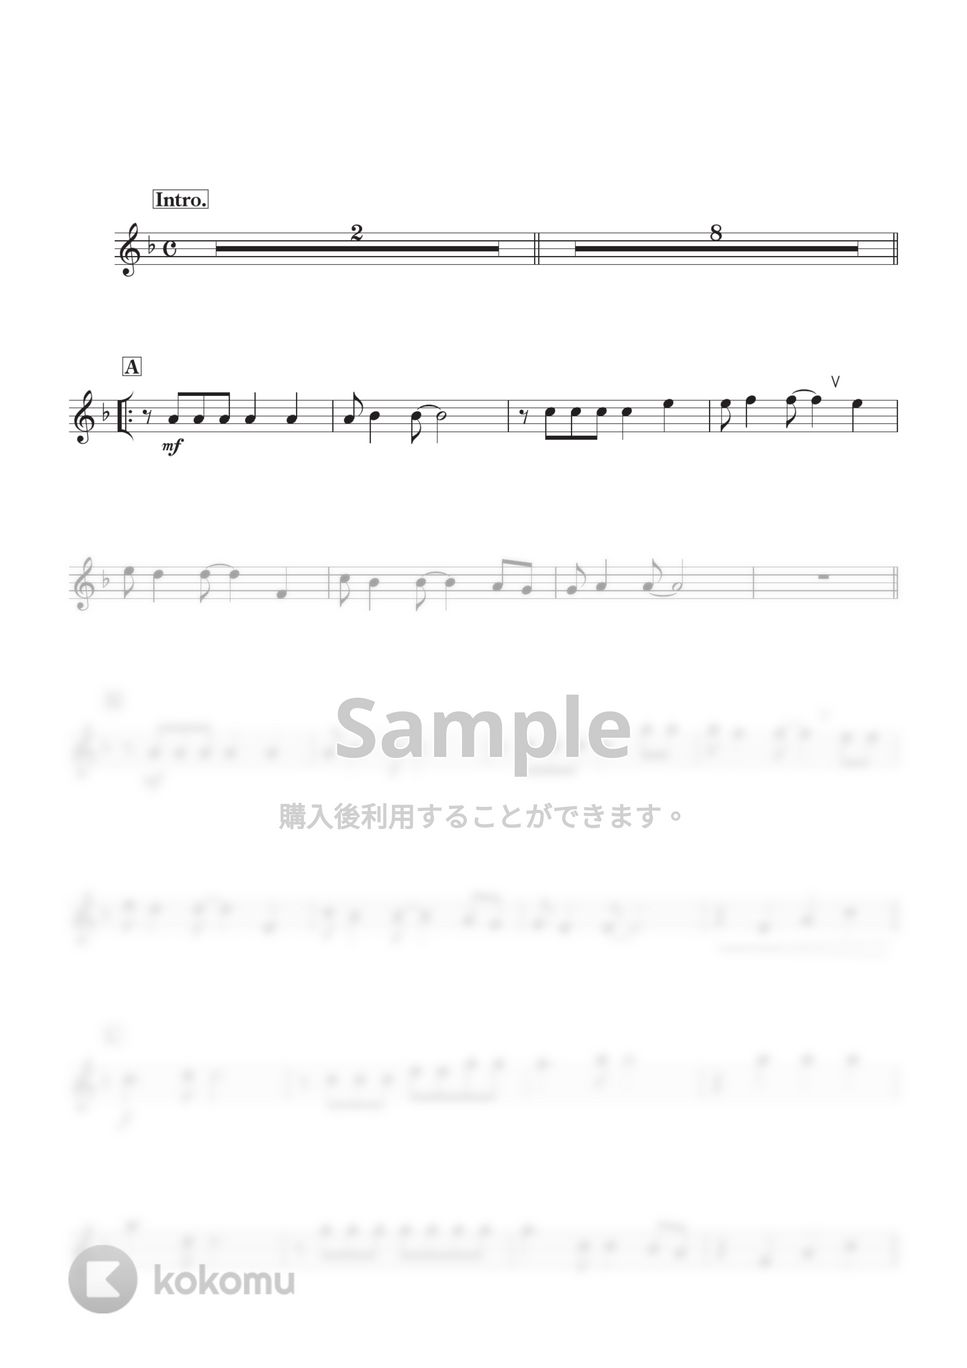 スピッツ - 魔法のコトバ (C) by kanamusic